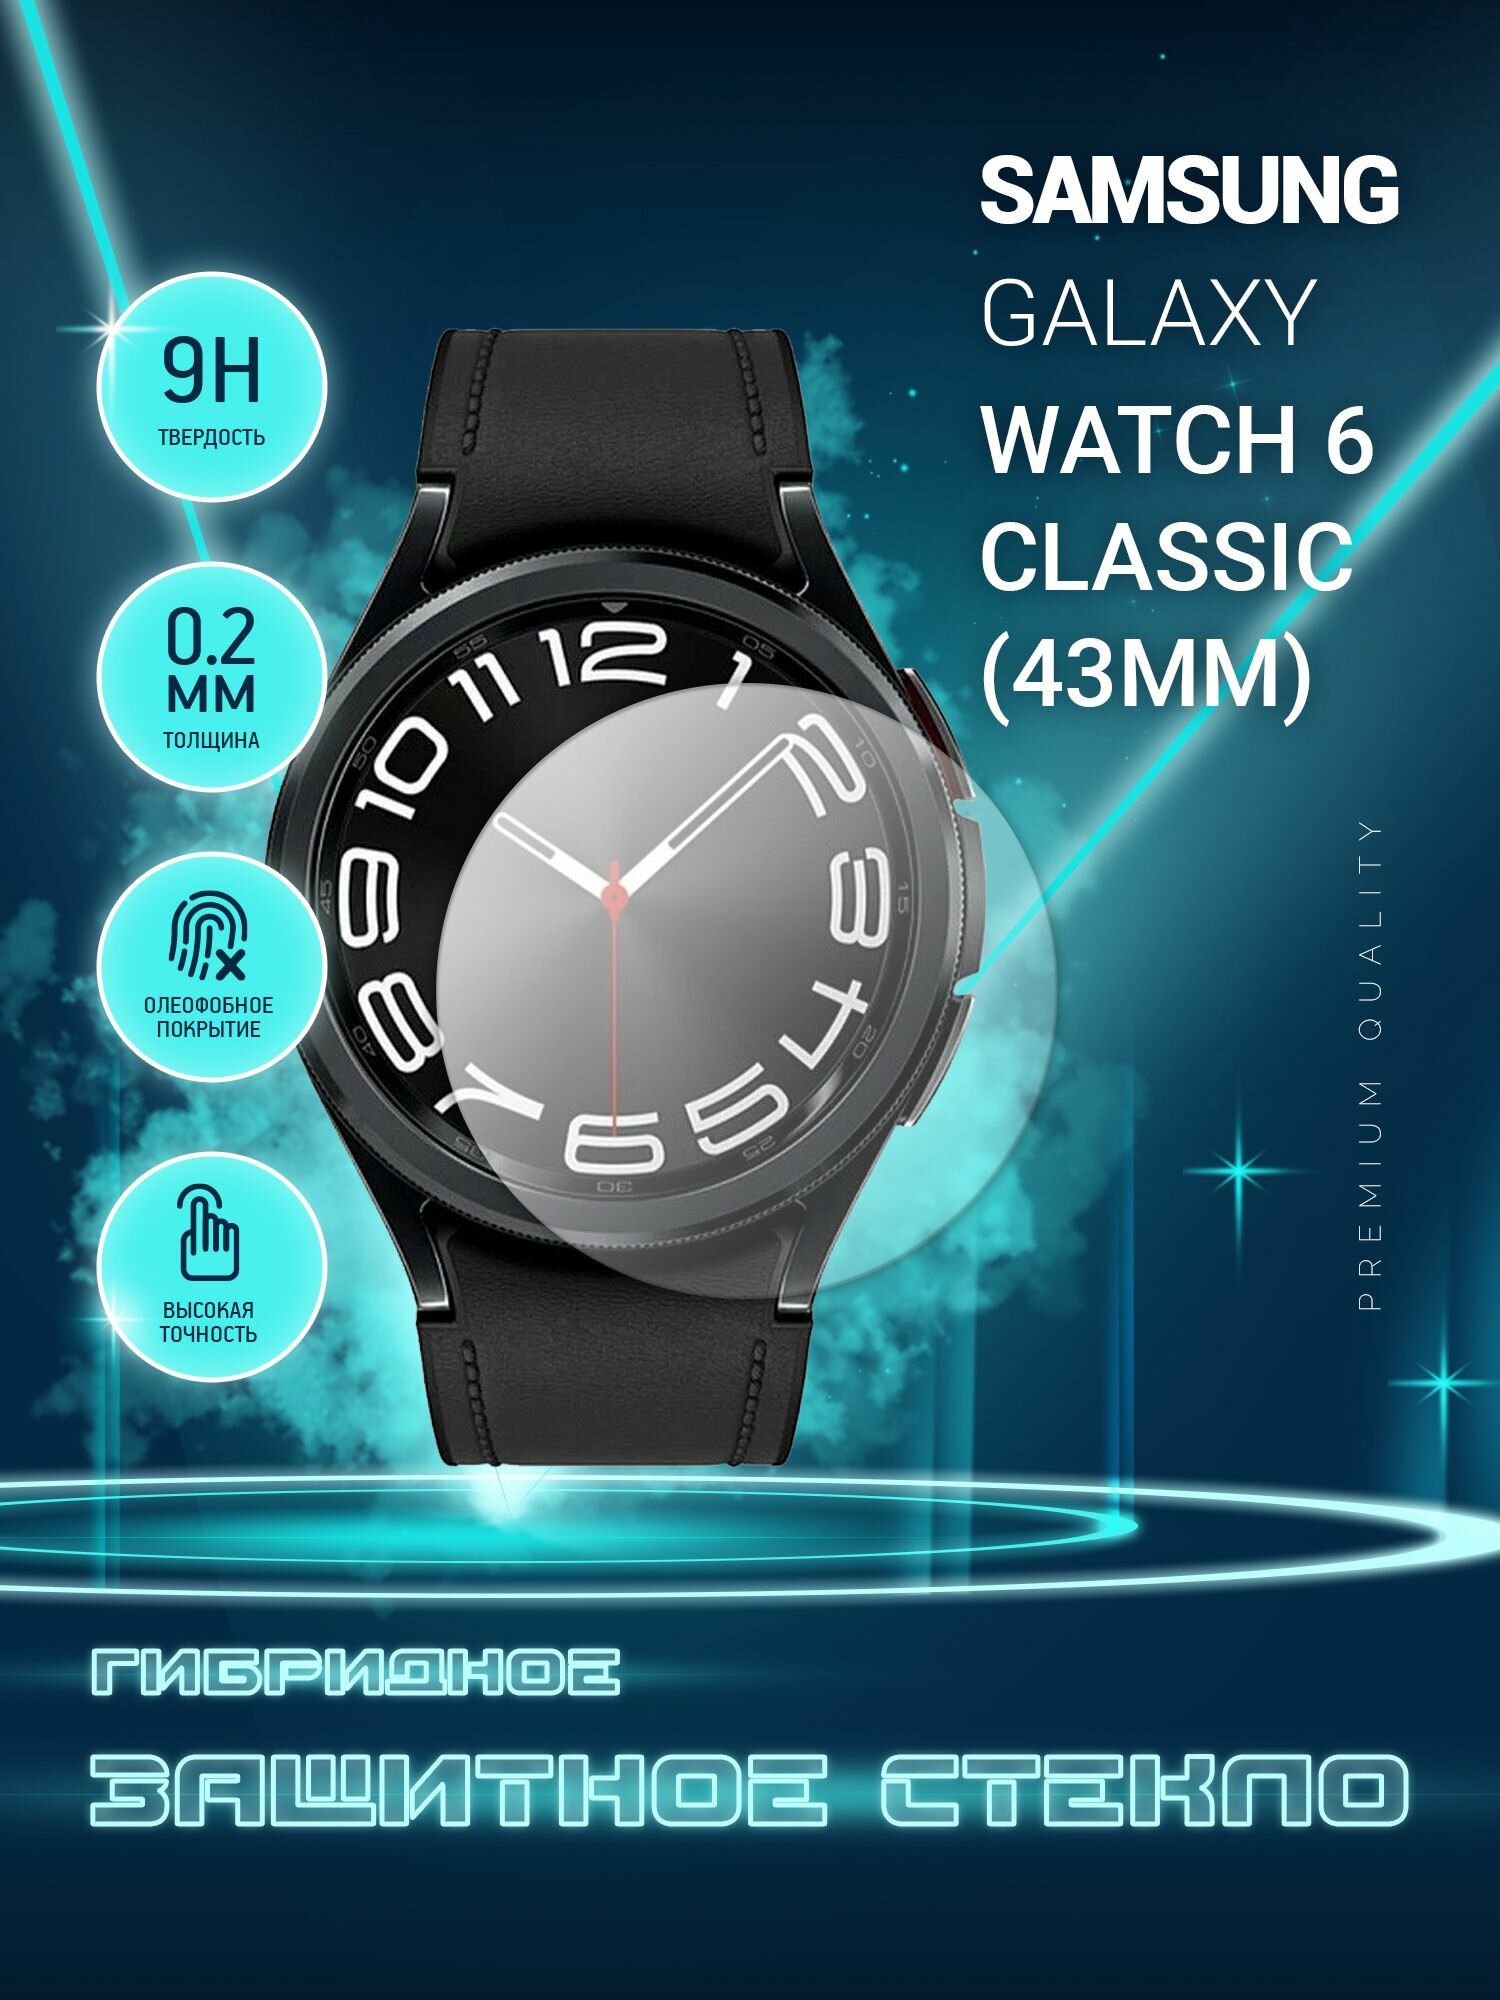 Защитное стекло на часы Samsung Galaxy Watch 6 Classic 43mm Самсунг Галакси Вотч 6 классик 43мм гибридное (пленка + стекловолокно) Crystal boost